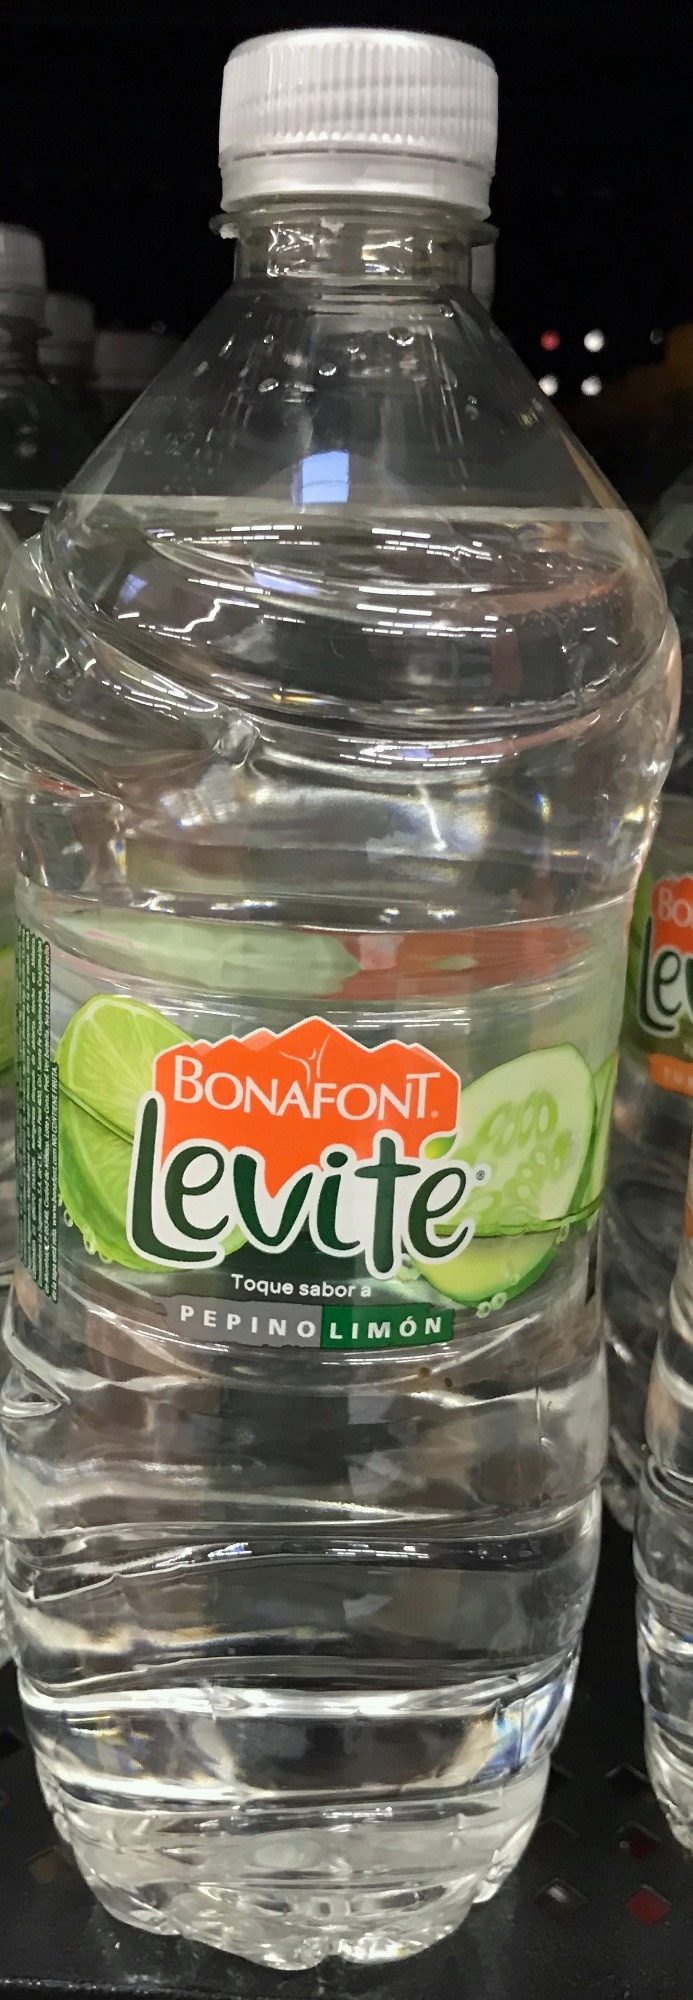 Bonfont Levite Pepino-Limón - Producto